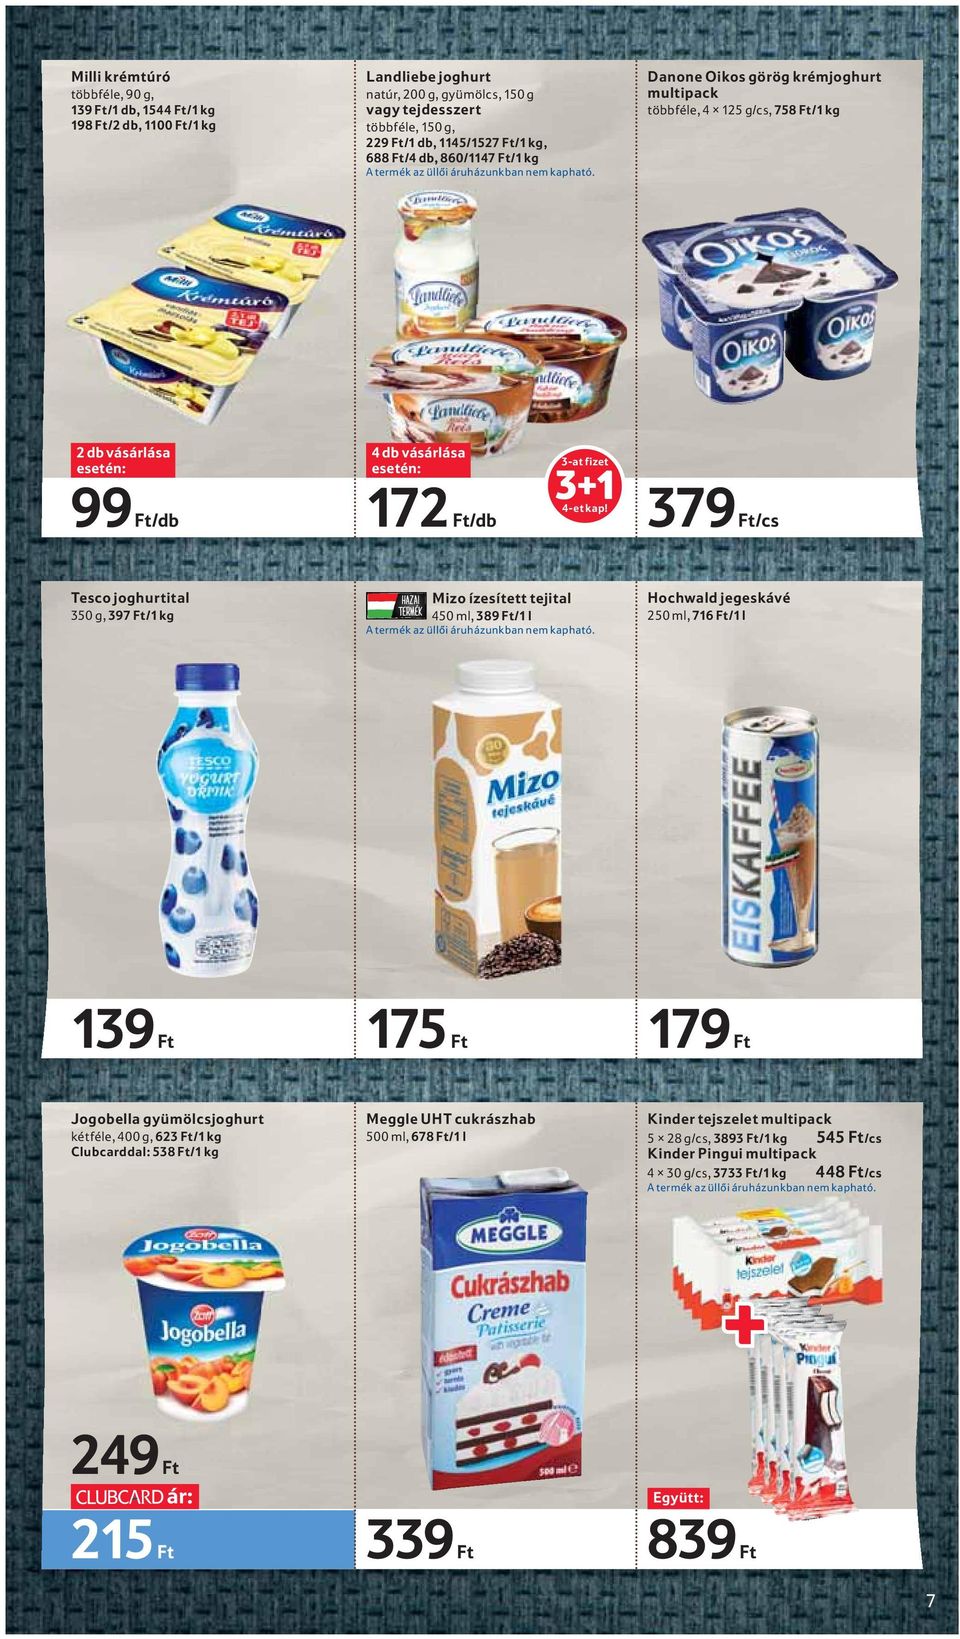 Danone Oikos görög krémjoghurt multipack többféle, 4 125 g/cs, 758 Ft/1 kg 2 db vásárlása 99 Ft/db 4 db vásárlása 172 Ft/db 3-at fizet 3+1 4-et kap!